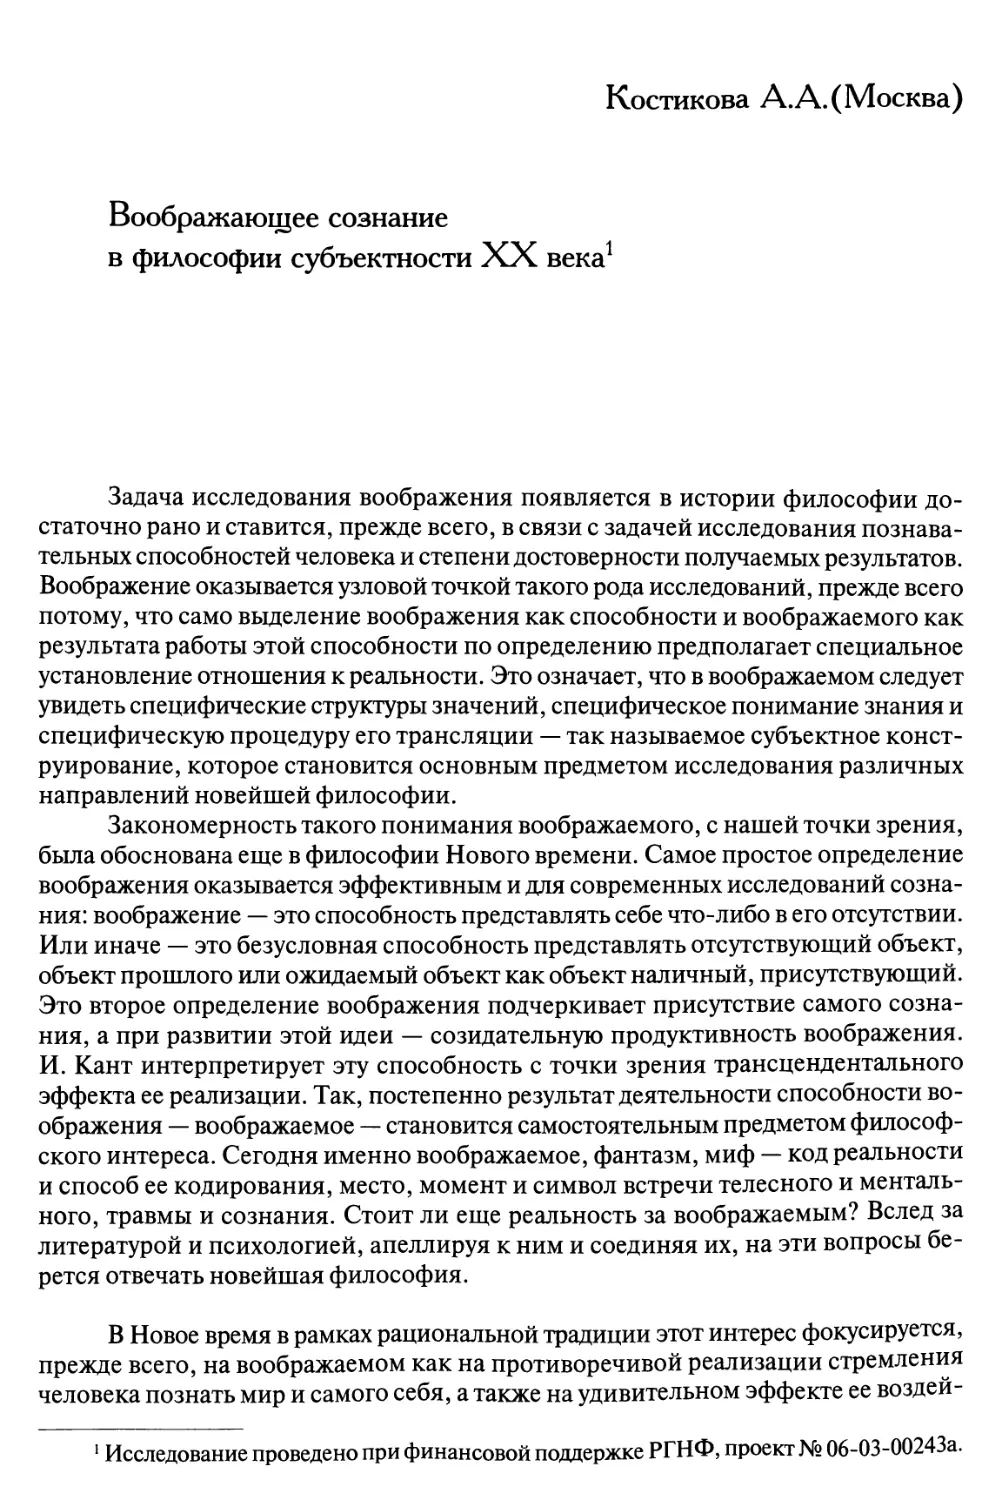 Костикова A.A. Воображающее сознание в философии субъектности XX века